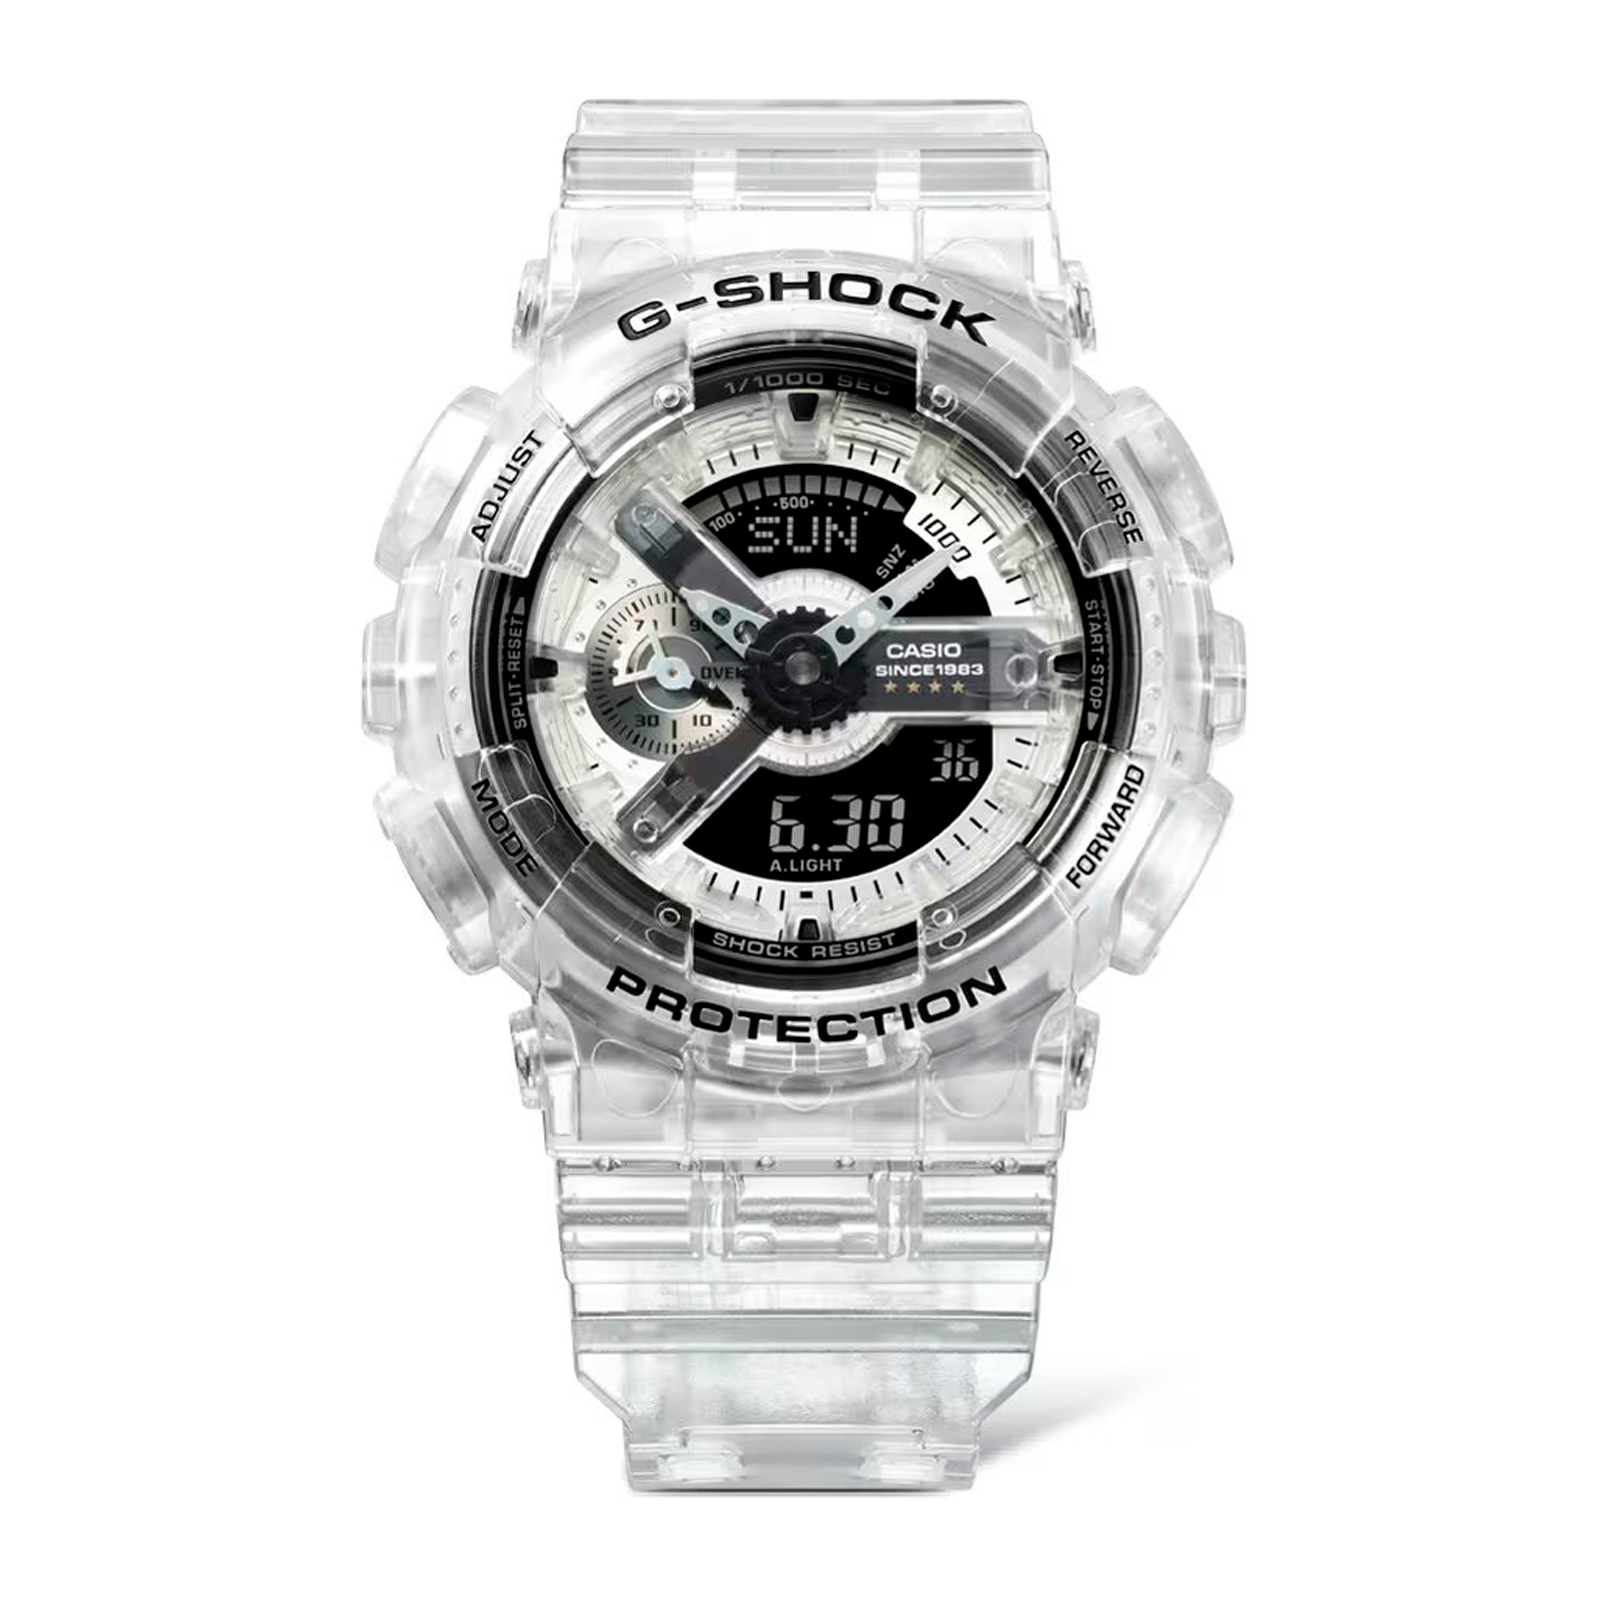 Reloj G-SHOCK GA-114RX-7A Resina Hombre Transparente